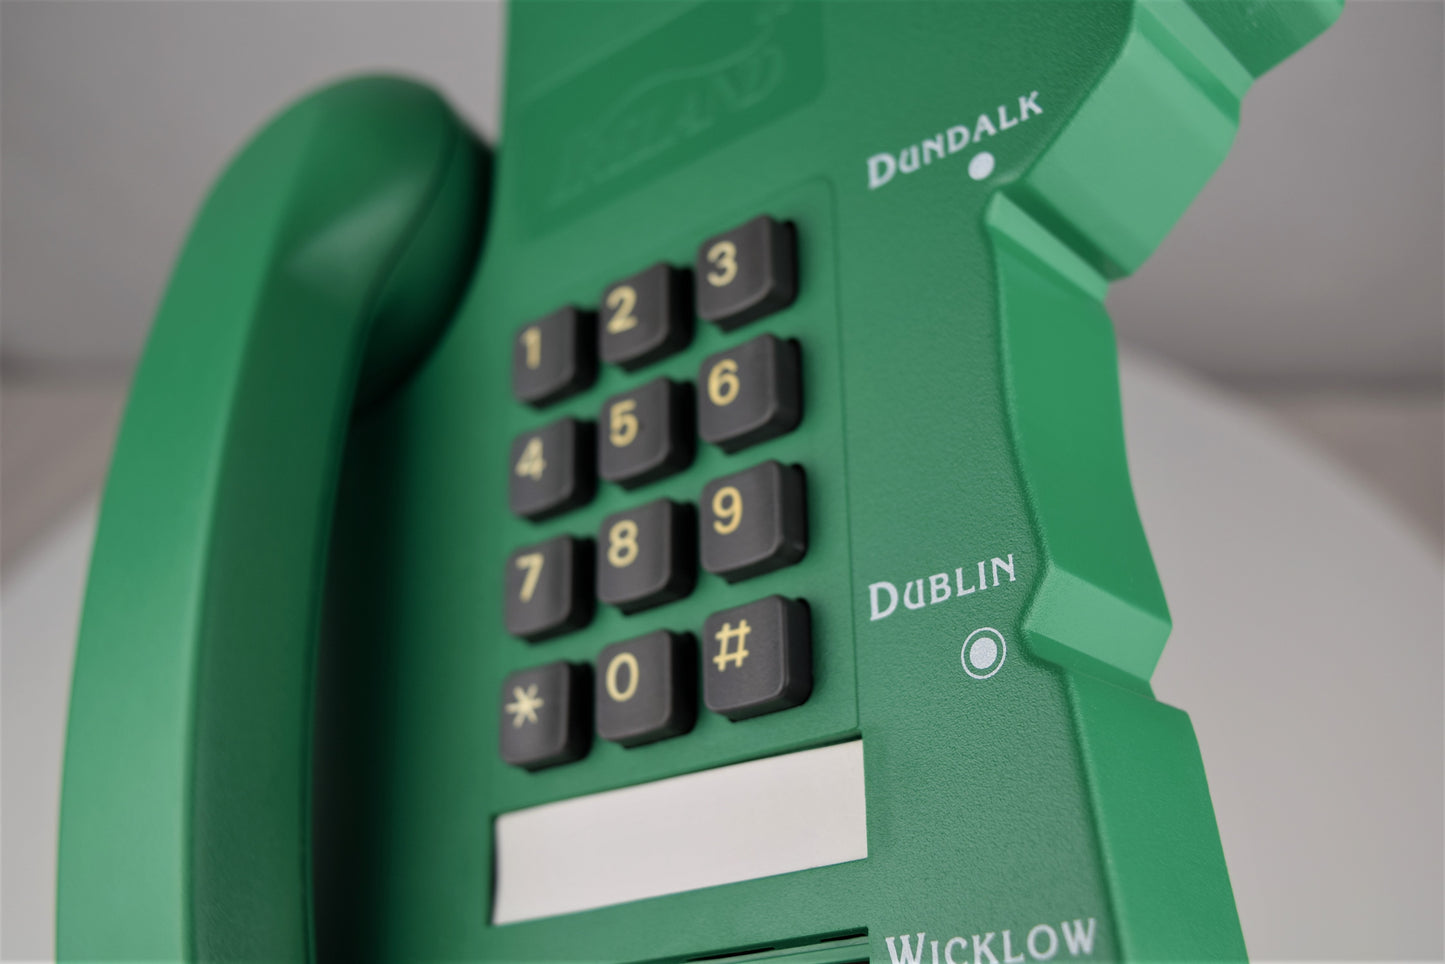 Ireland Novelty Phone